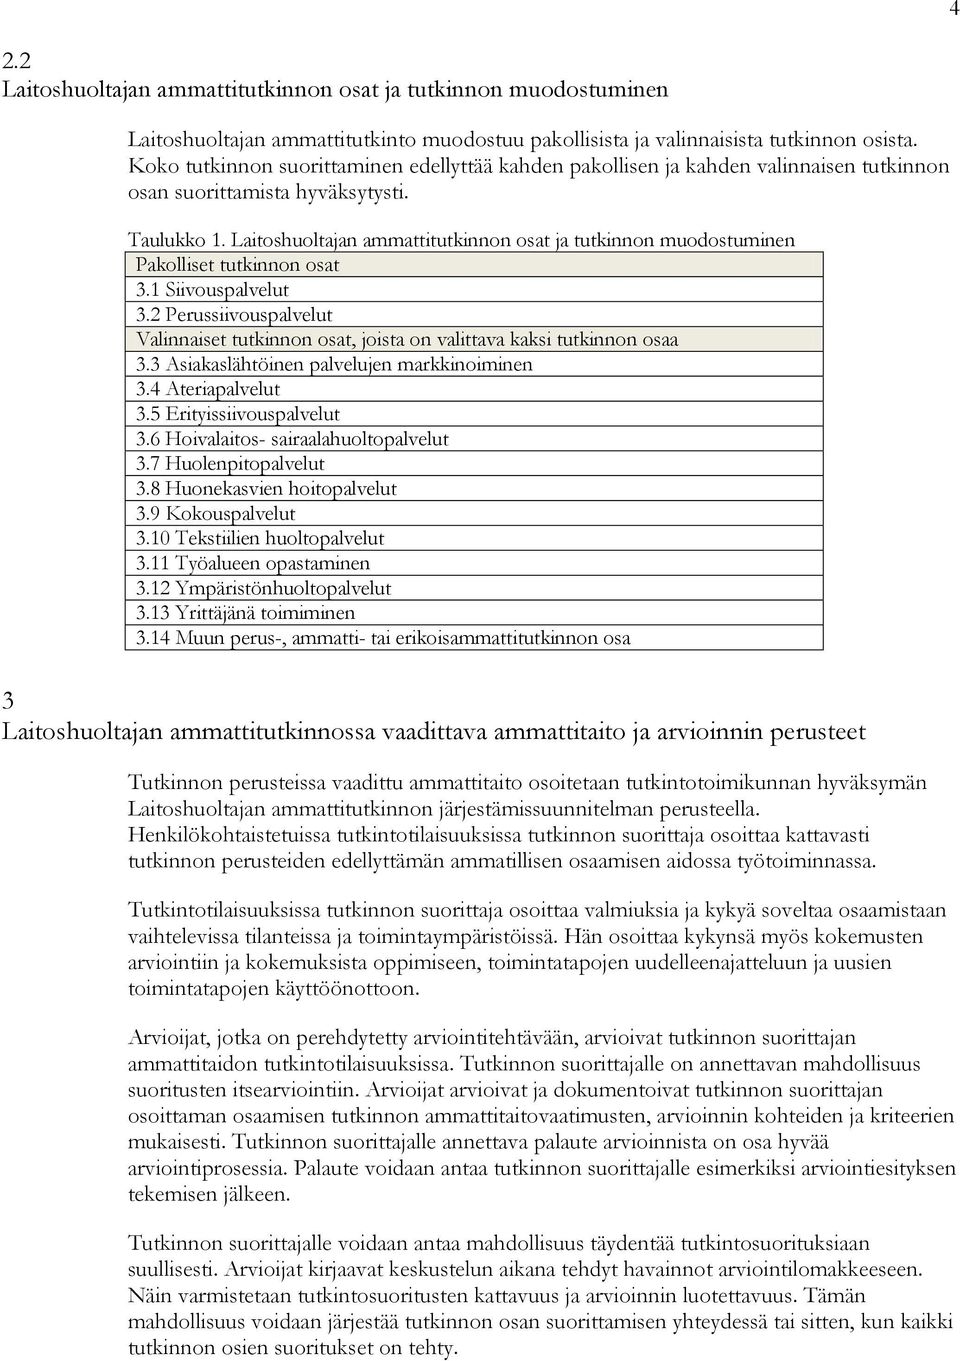 Laitoshuoltajan ammattitutkinnon osat ja tutkinnon muodostuminen Pakolliset tutkinnon osat 3.1 Siivouspalvelut 3.